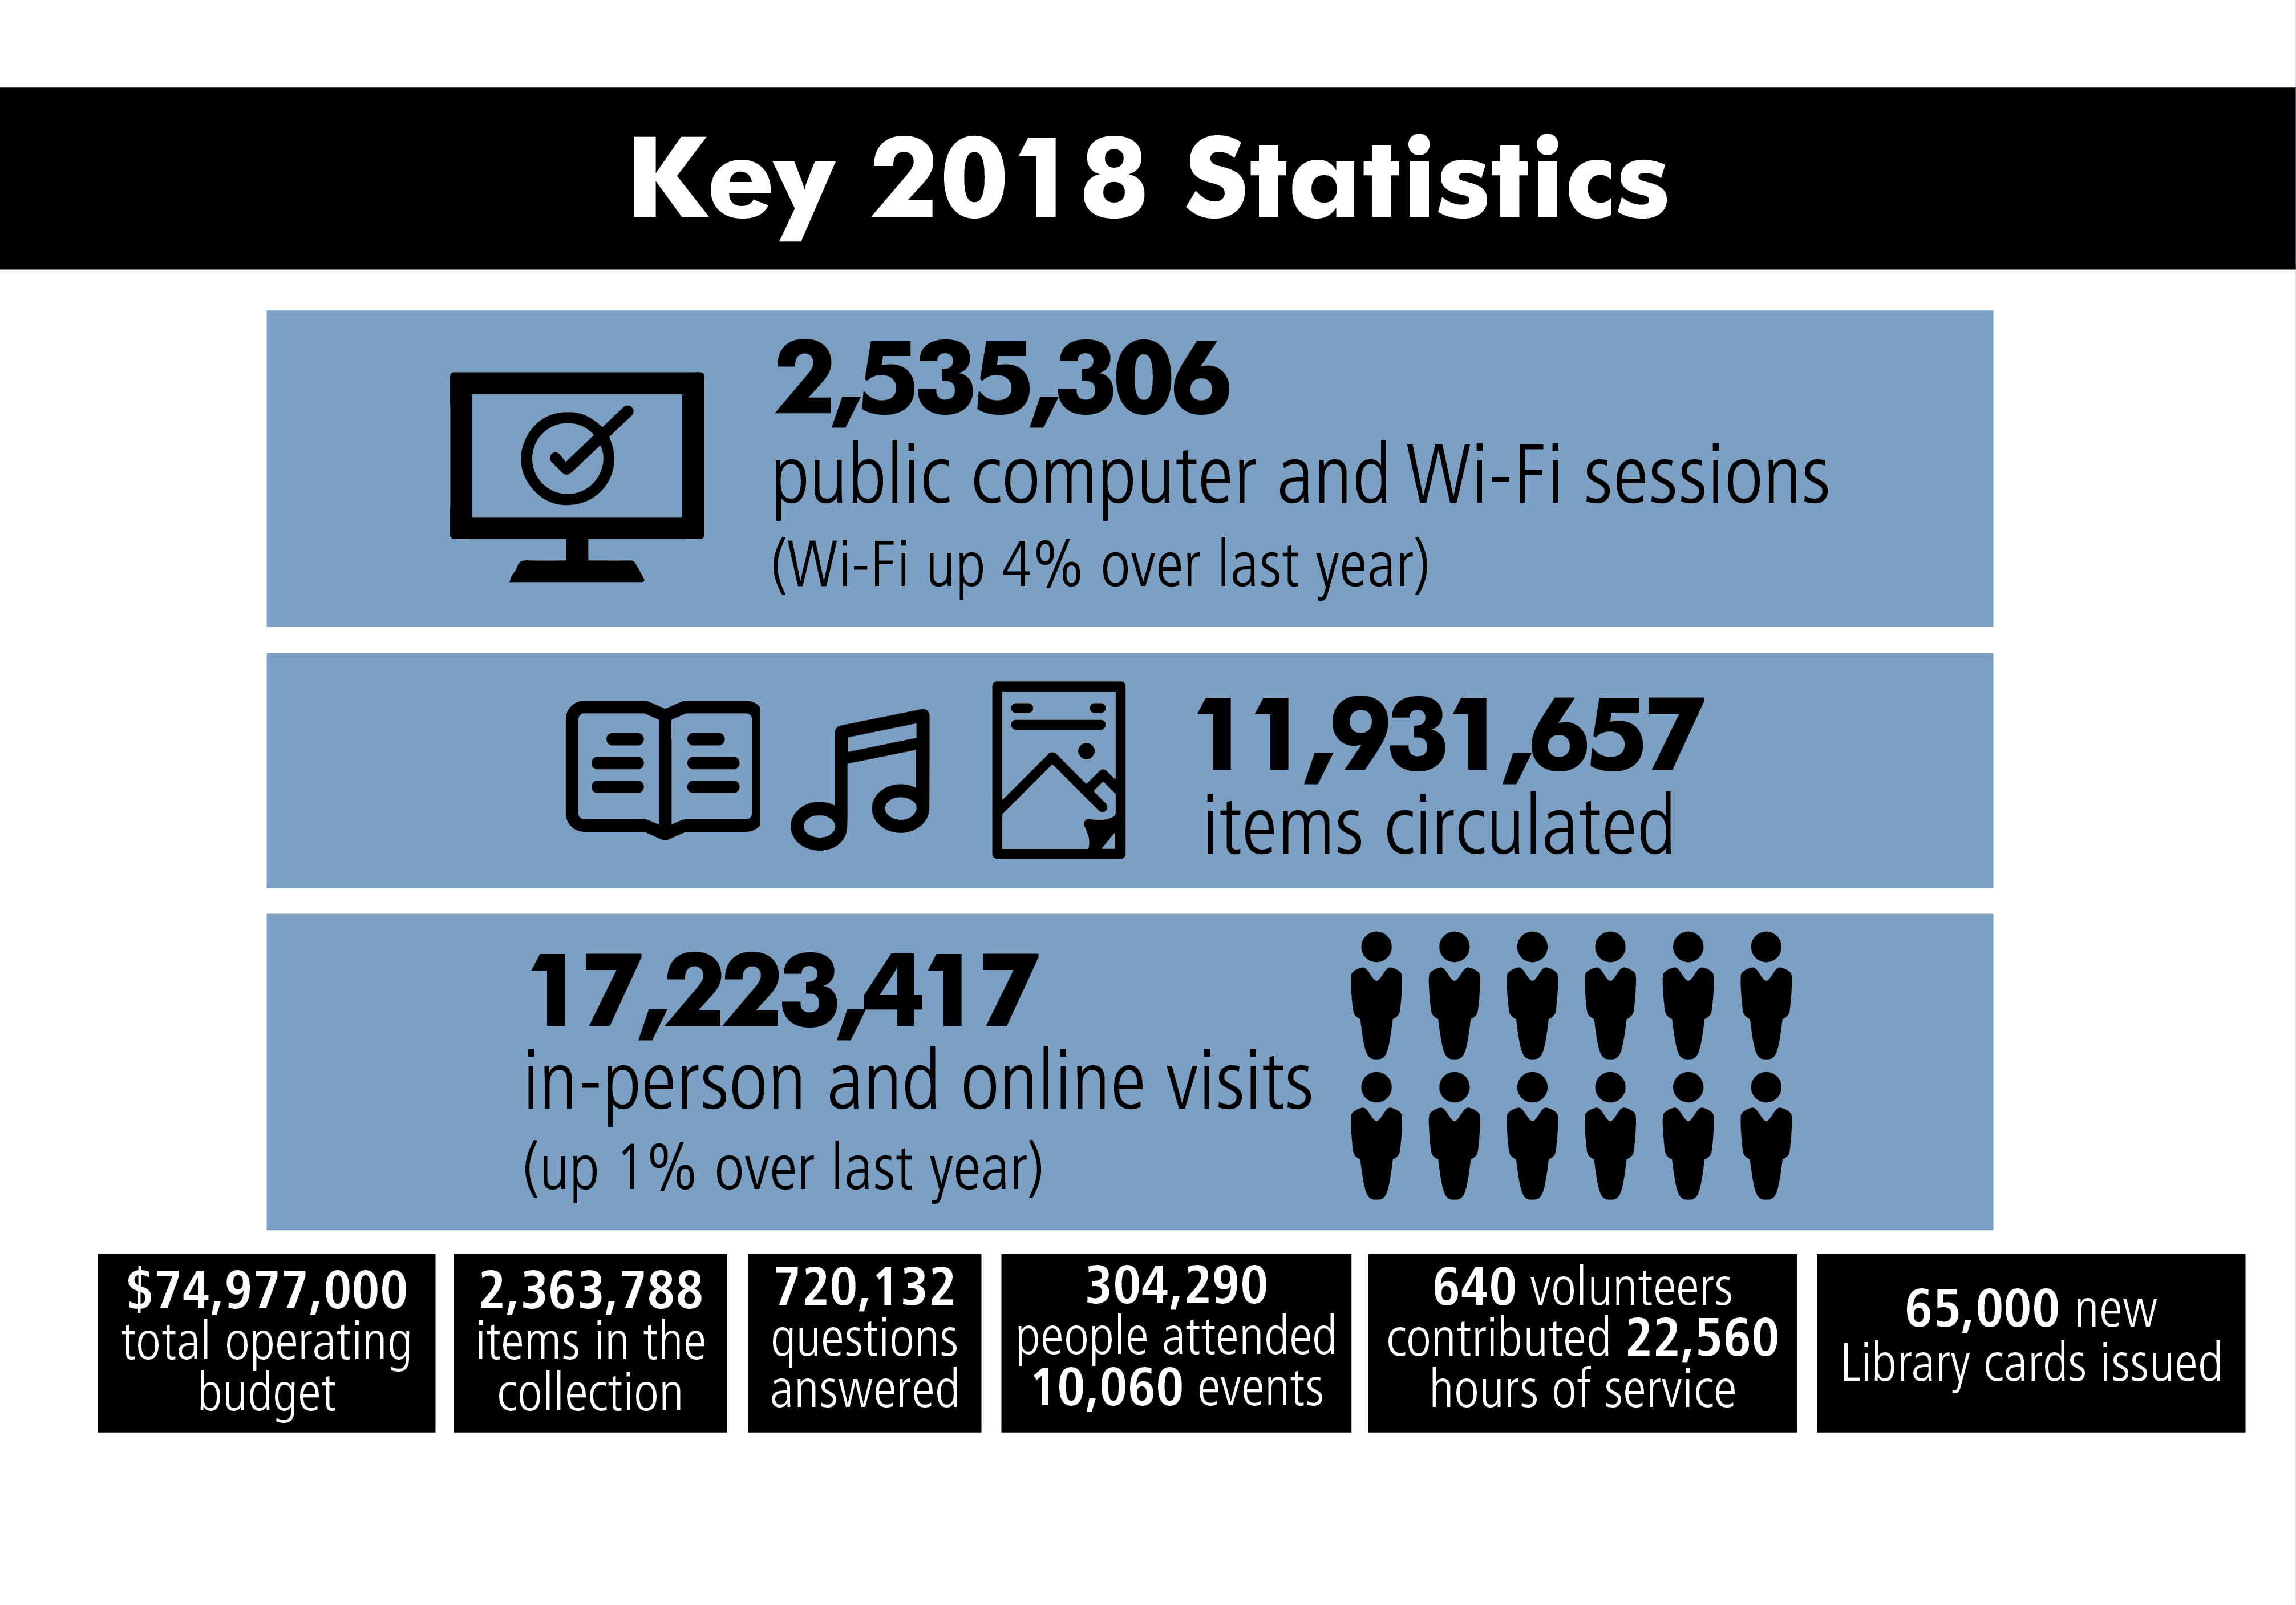 Key 2018 statistics